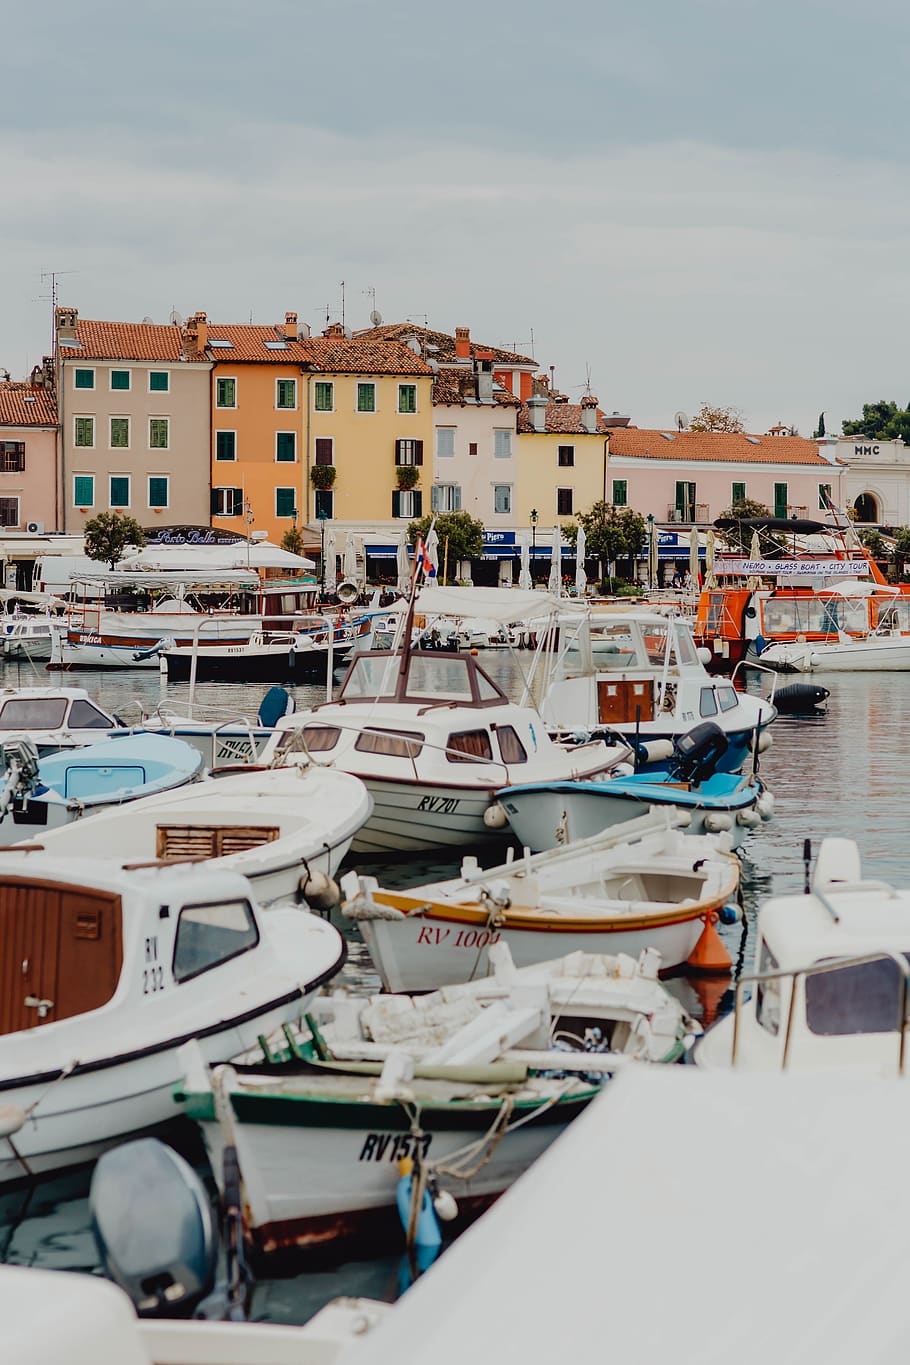 mediterrâneo, vila, cidade, turismo, verão, Visita, pequeno, Rovinj, Croácia, embarcação náutica